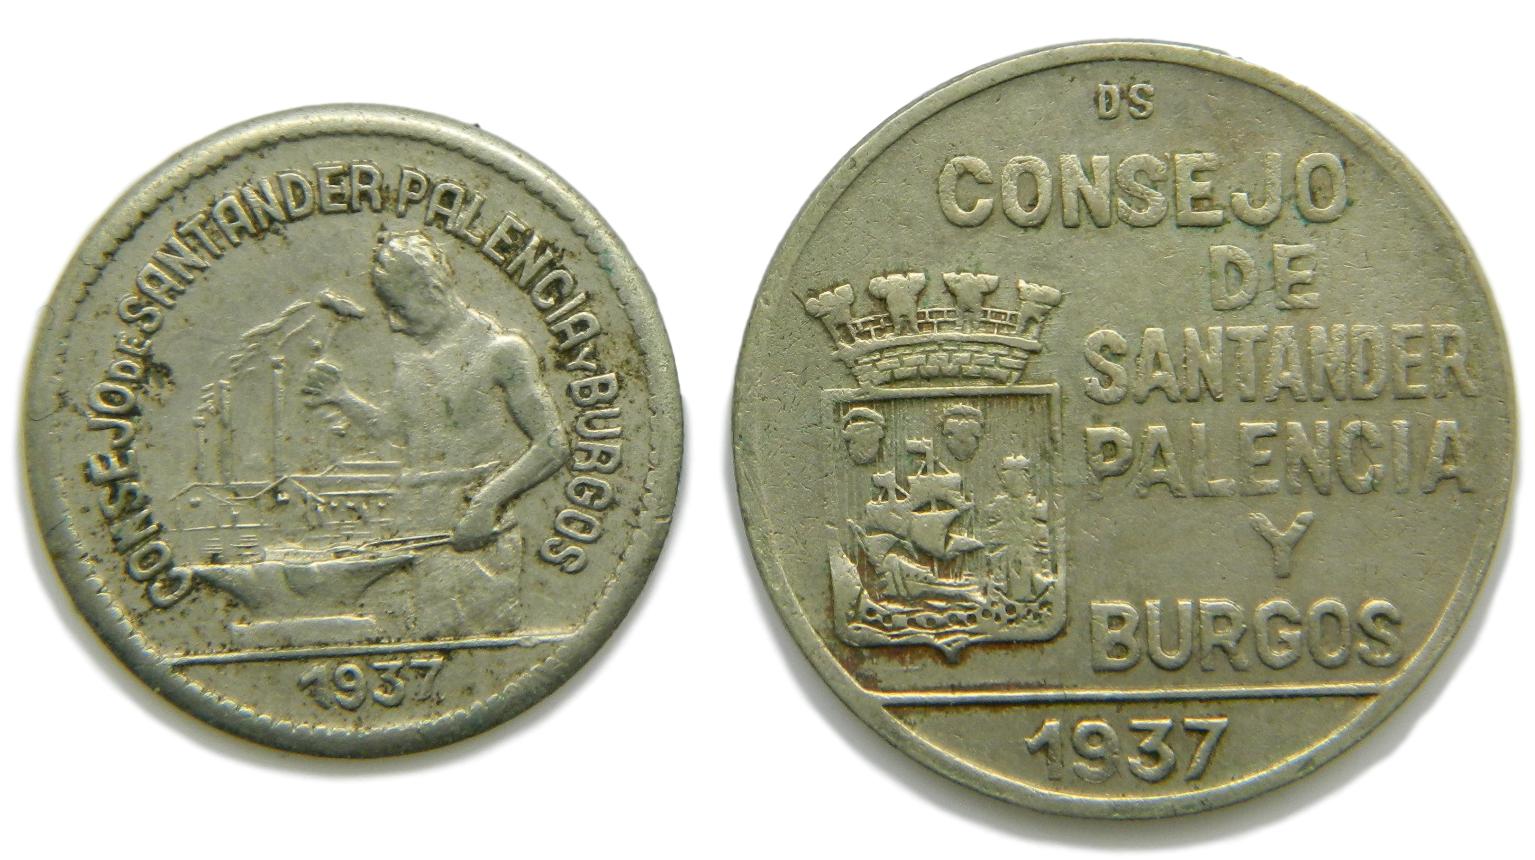 CONSEJO DE SANTANDER, PALENCIA Y BURGOS - 1937 - 1 PESETA Y 50 CENTIMOS 